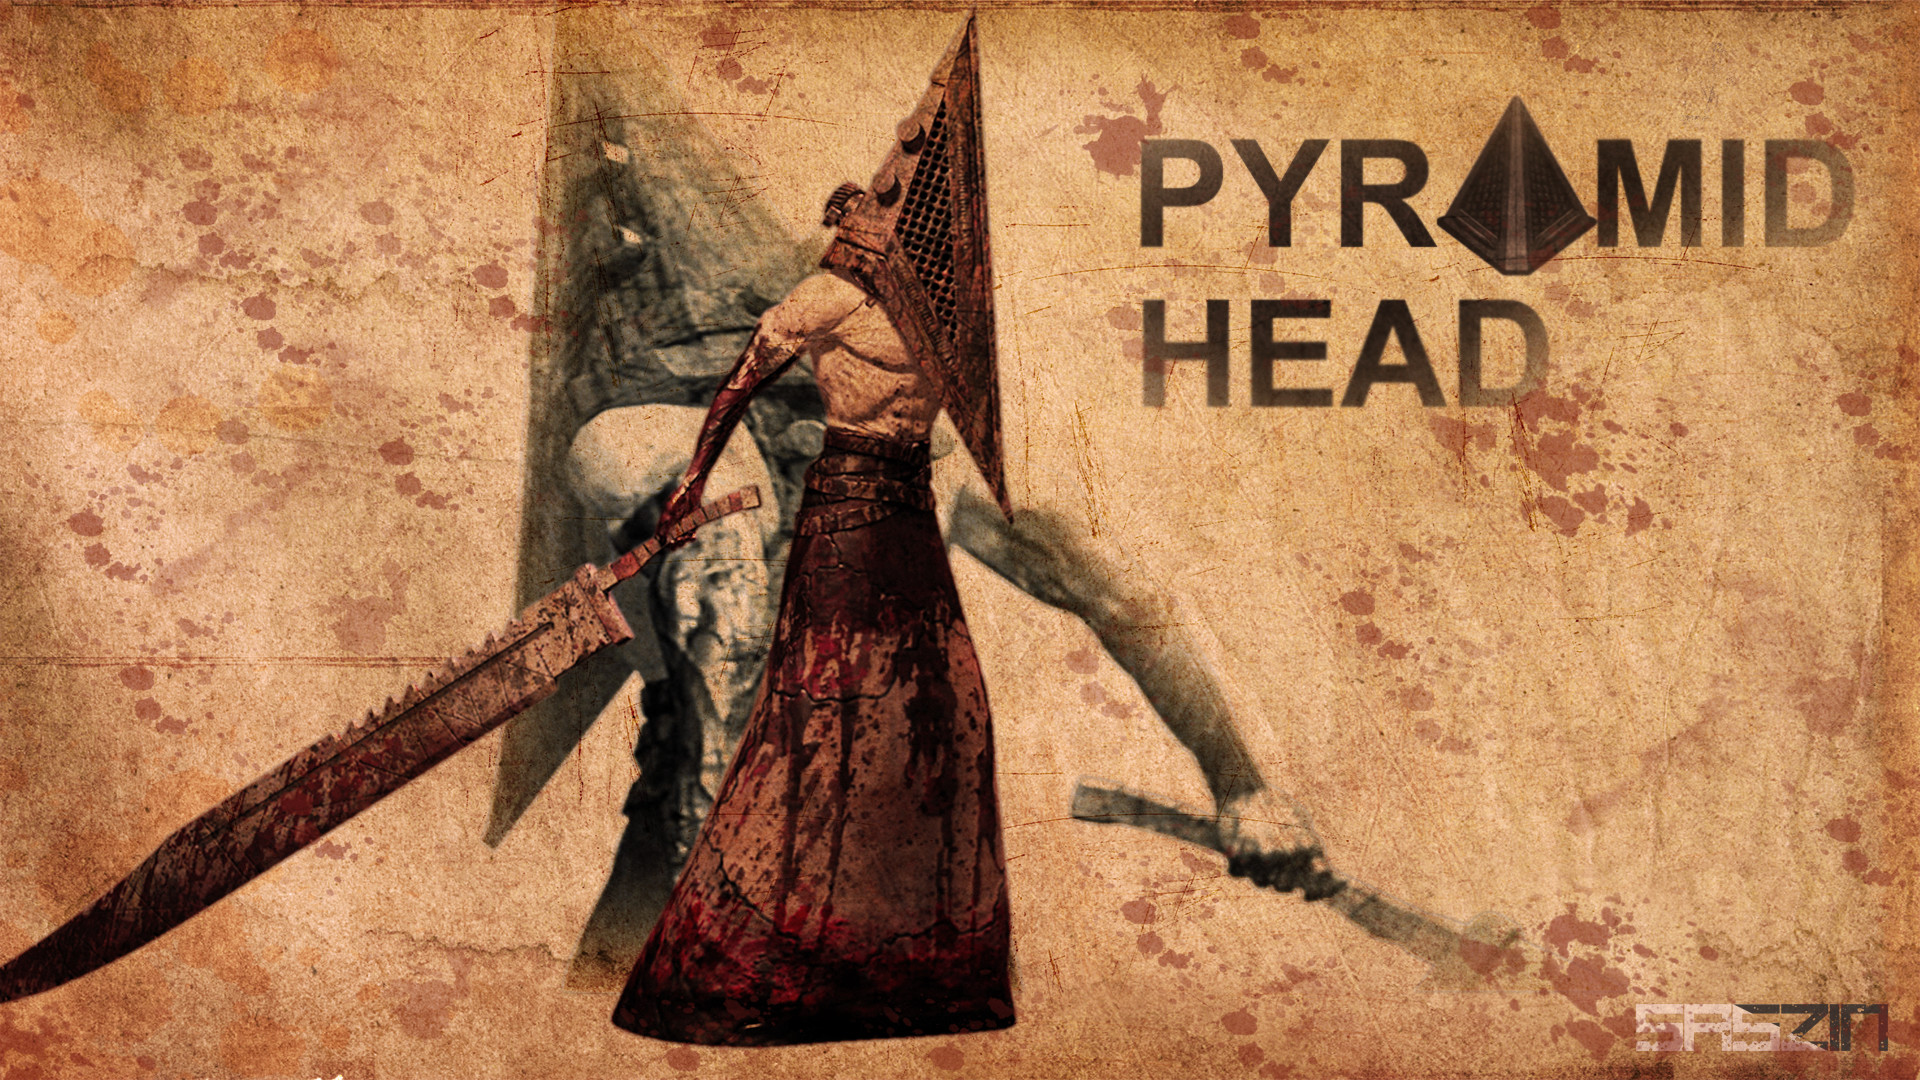 1920x1080 Pyramidhead wallpaper by saszin Pyramidhead wallpaper by saszin